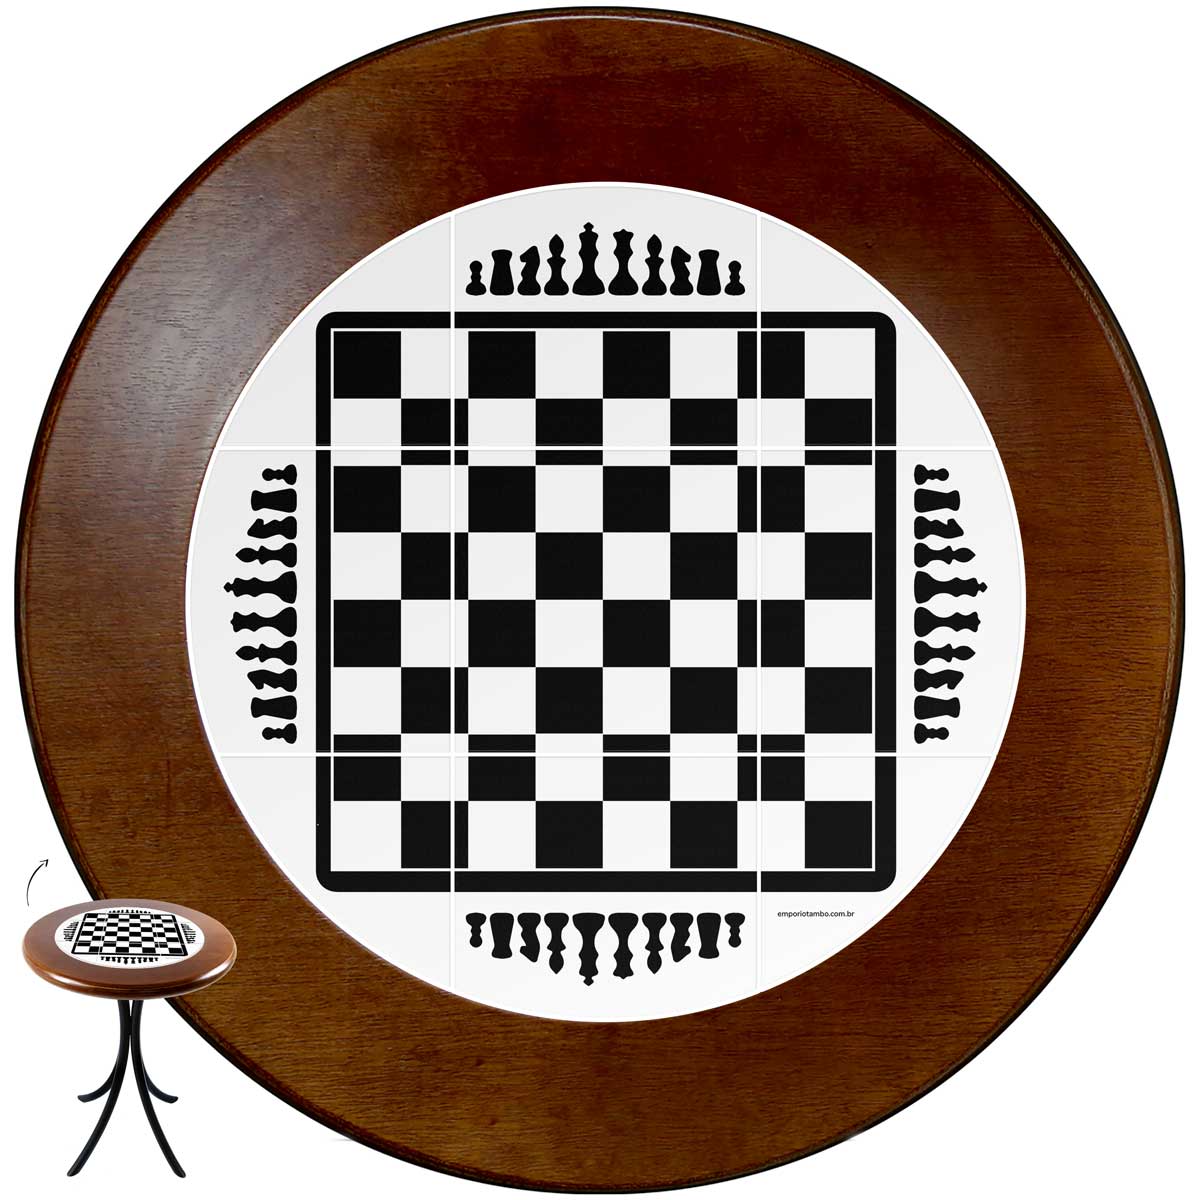 Redonda com xadrez